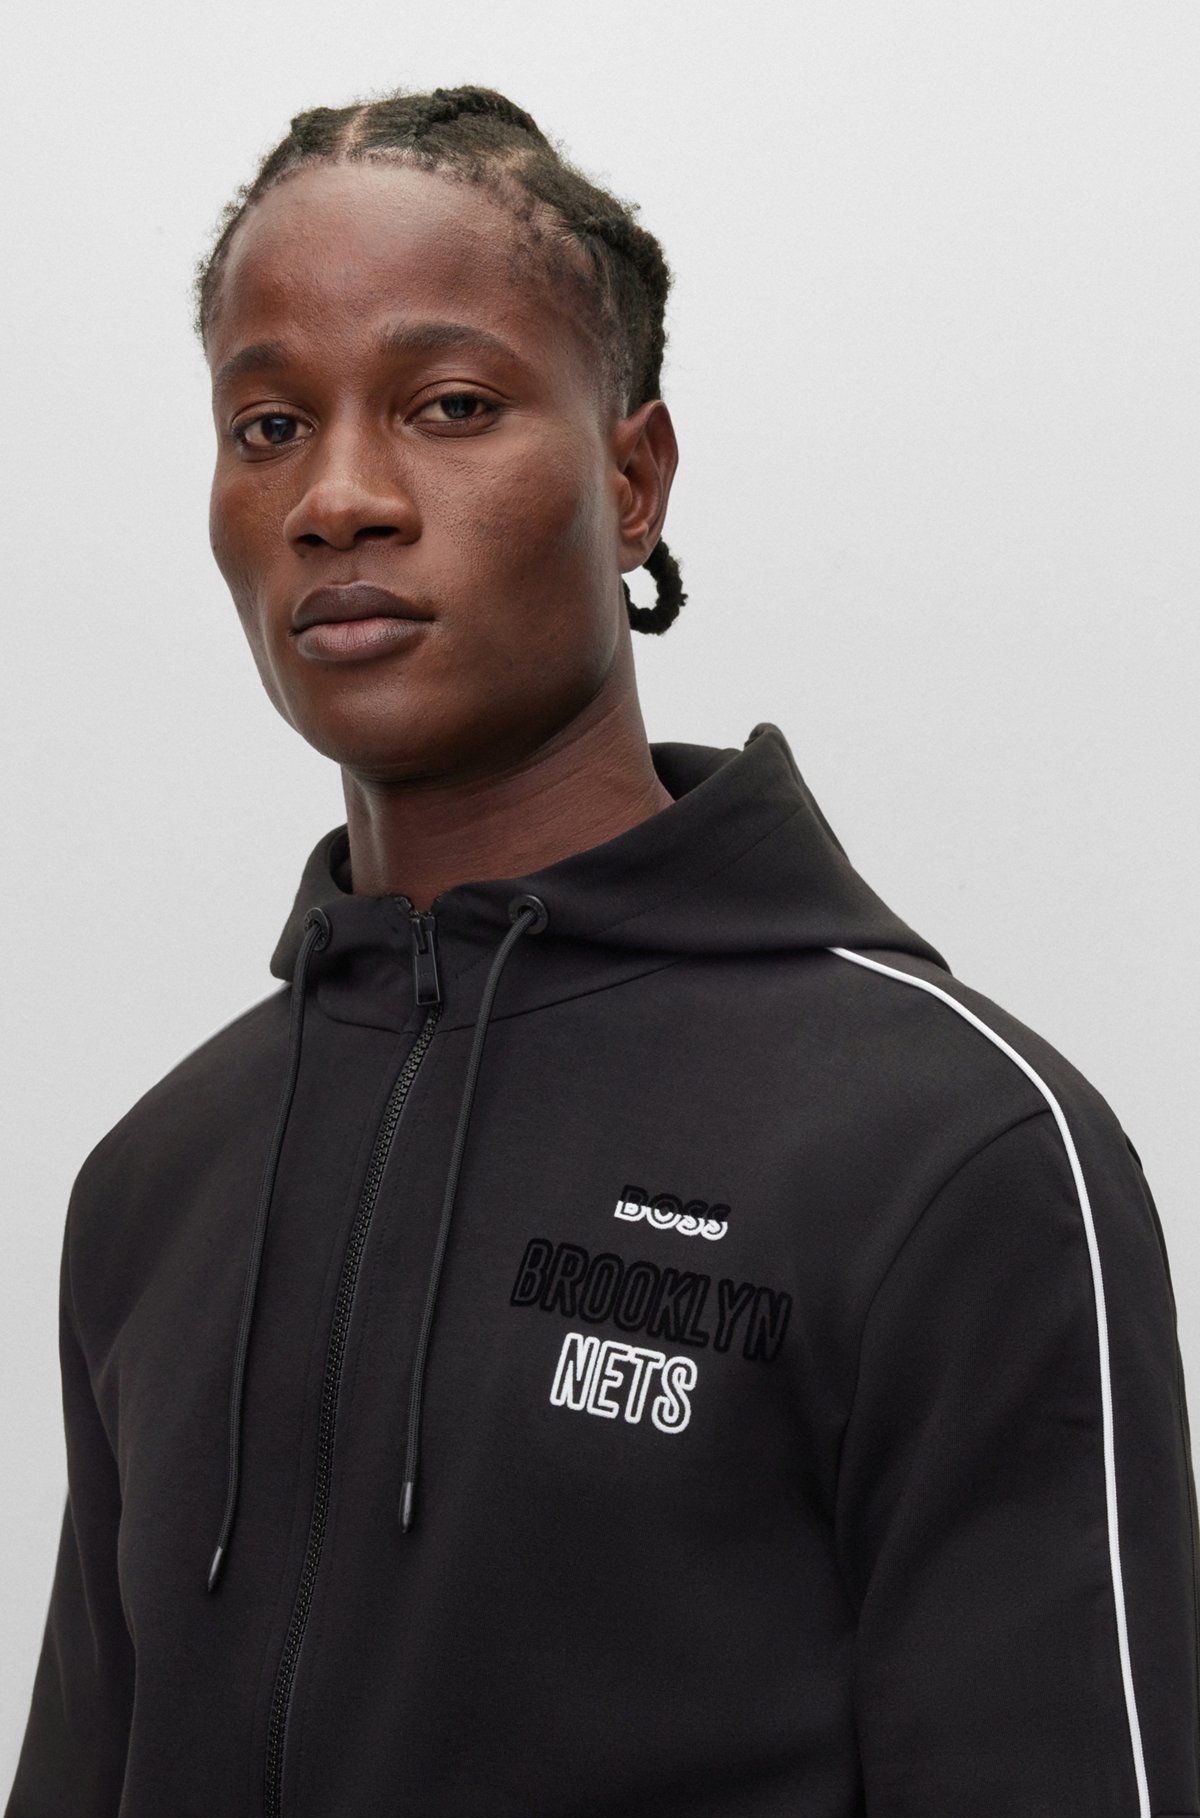 BOSS - BOSS & NBA cotton-blend zip-up hoodie